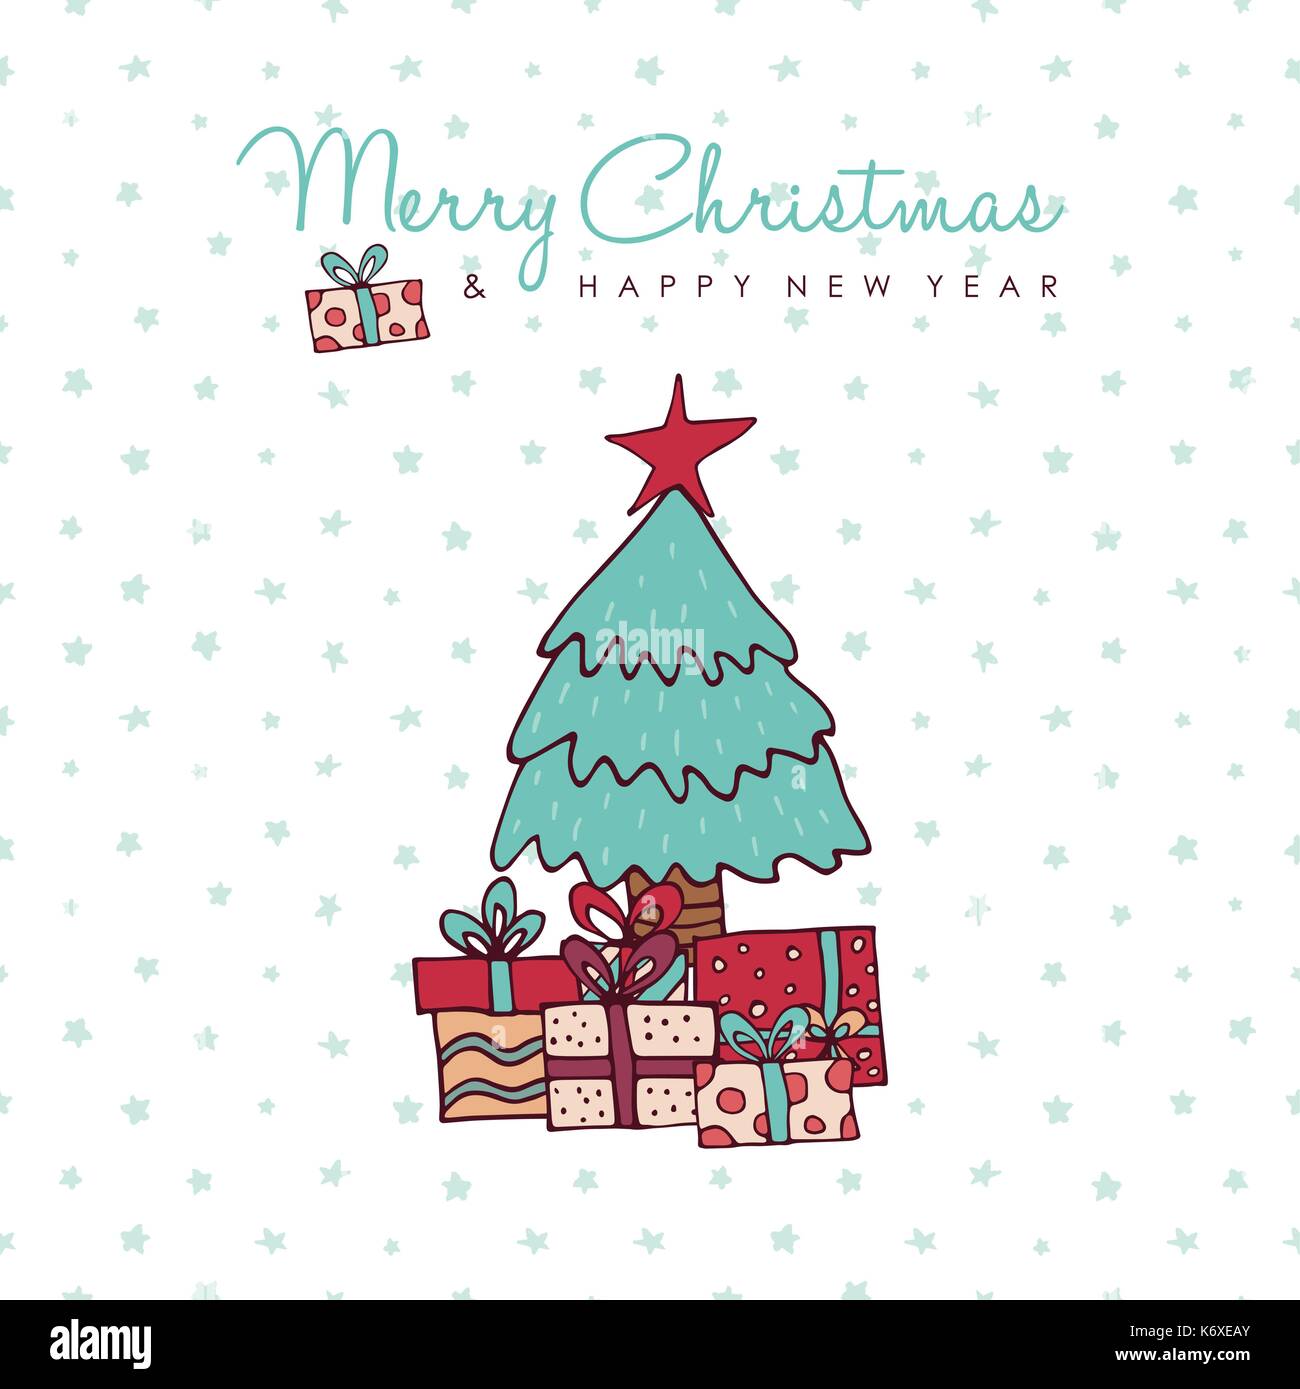 Frohe Weihnachten Frohes Neues Jahr Hand gezeichnet Grußkarte. Weihnachten Tanne mit Geschenkboxen und Urlaub Typografie Zitat. EPS 10 Vektor. Stock Vektor